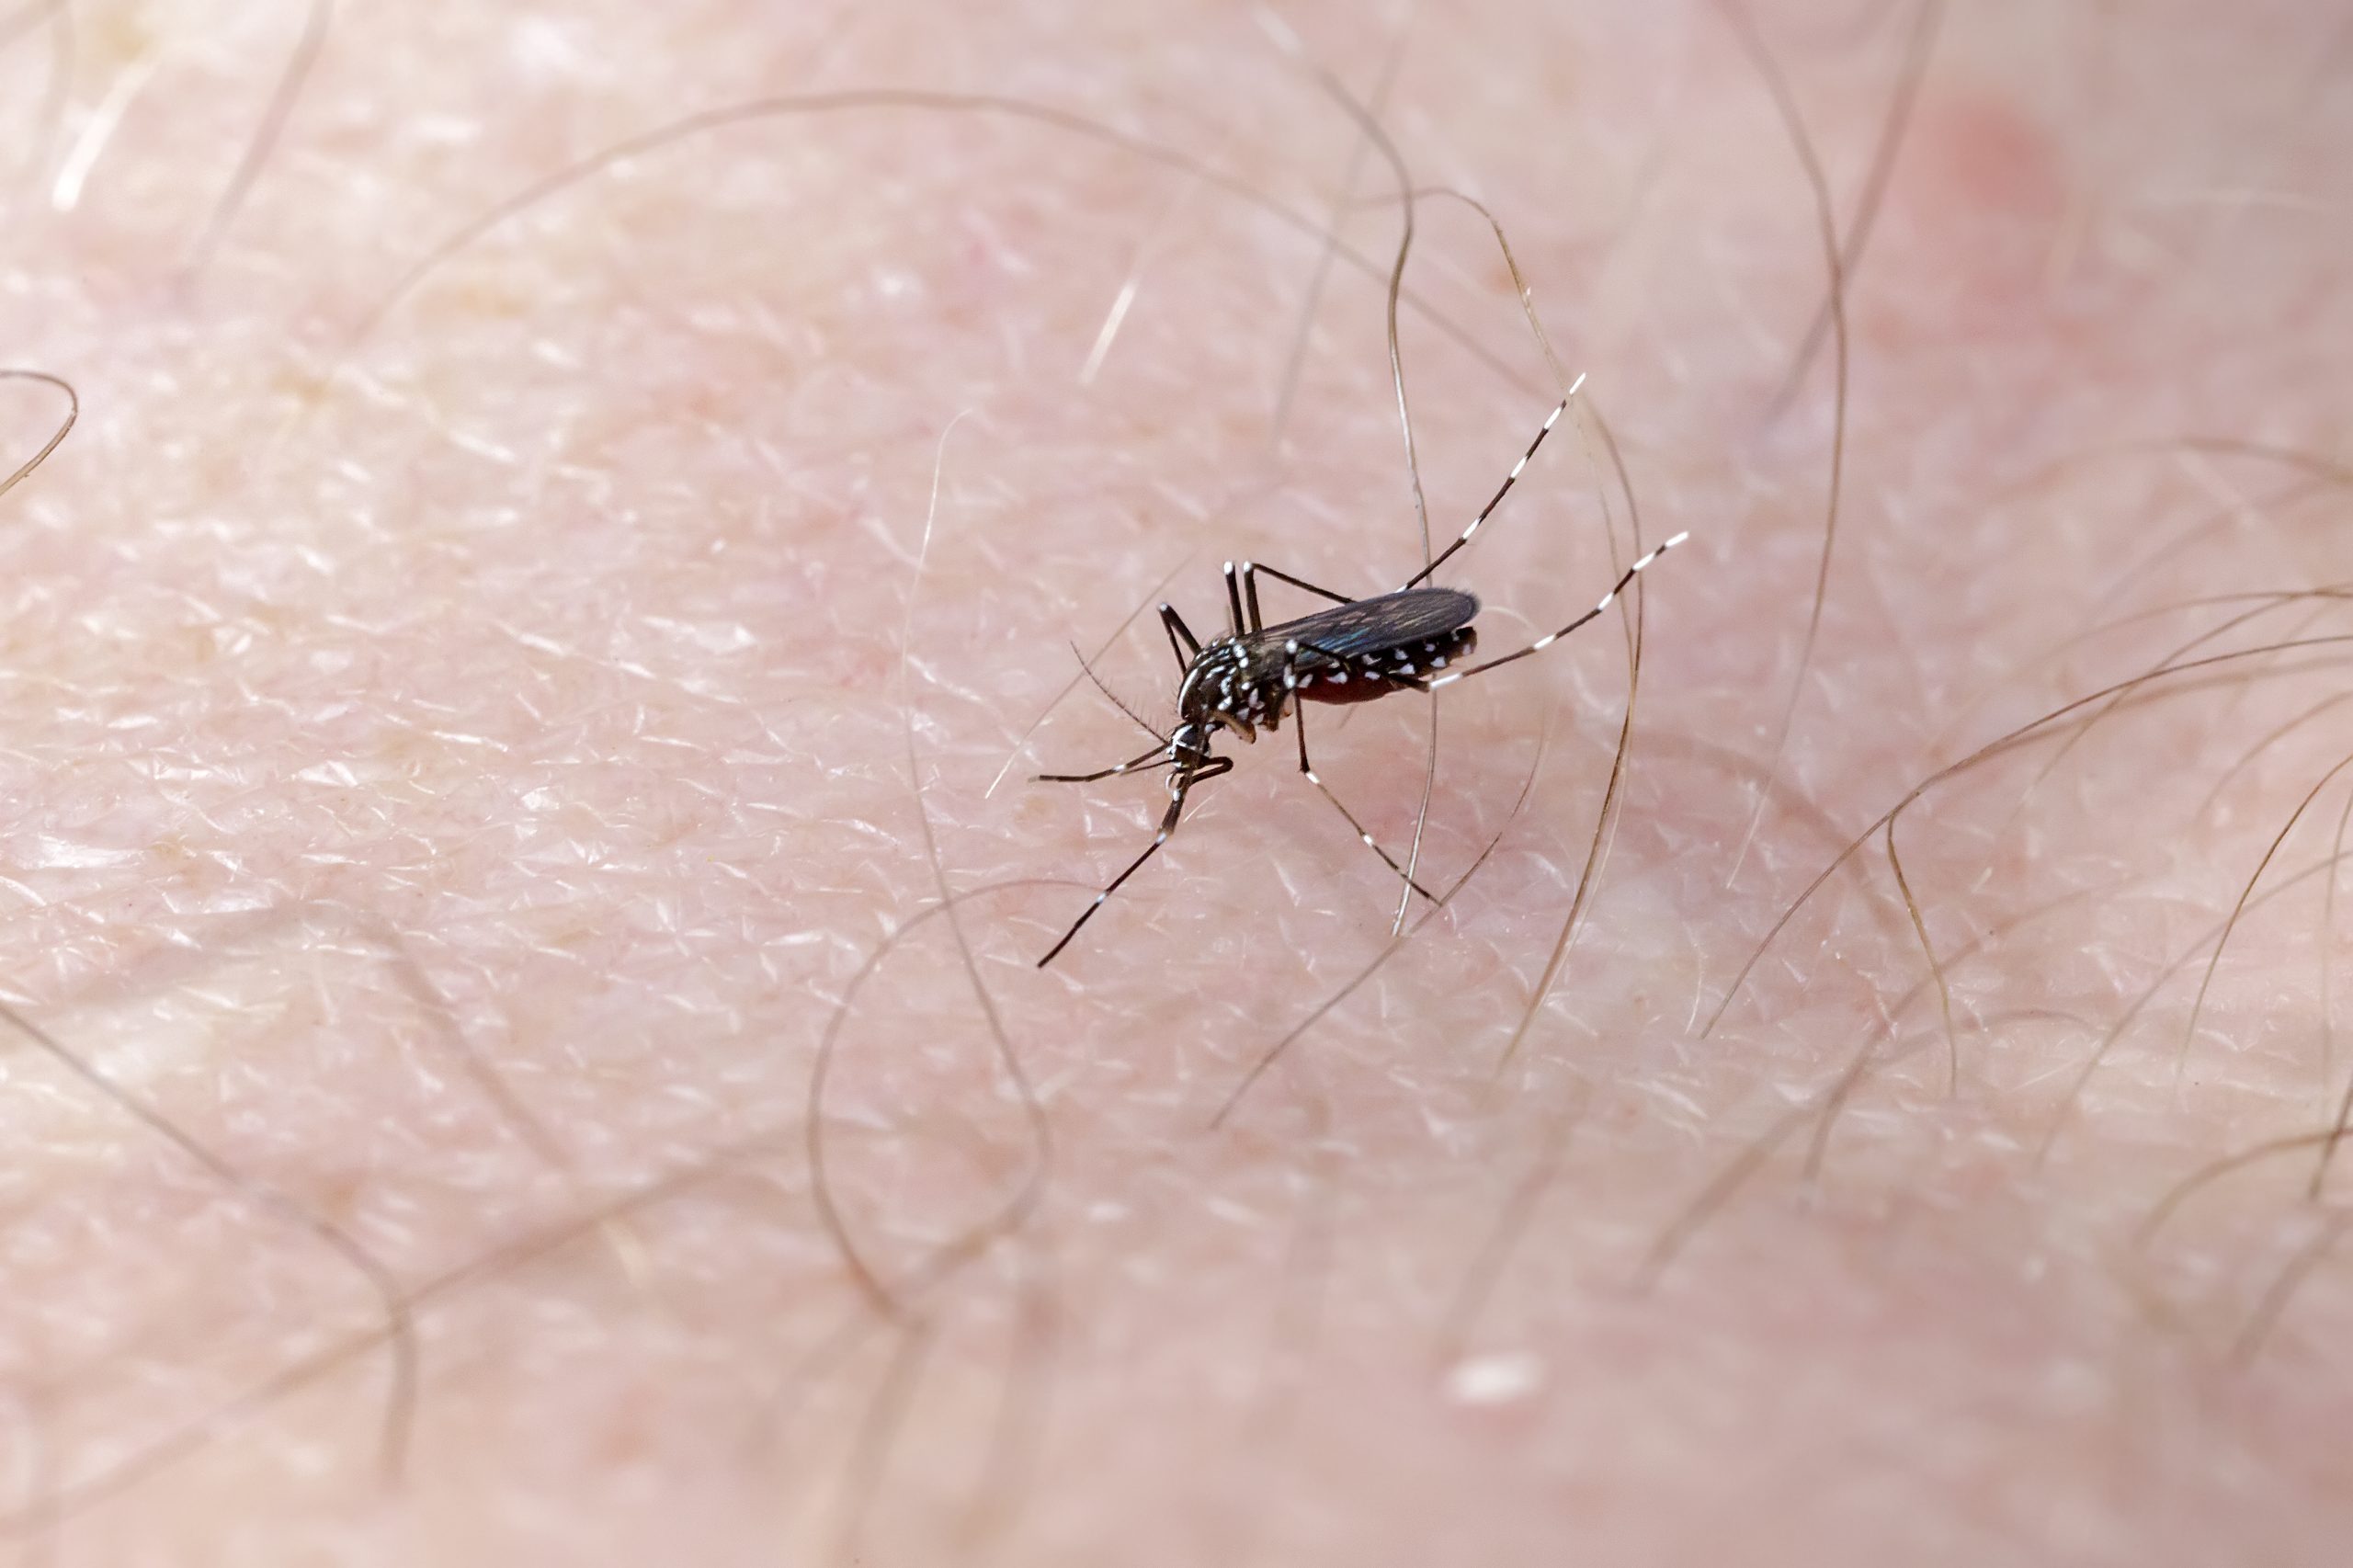 Sesa declara estado de epidemia de dengue no estado do Paraná